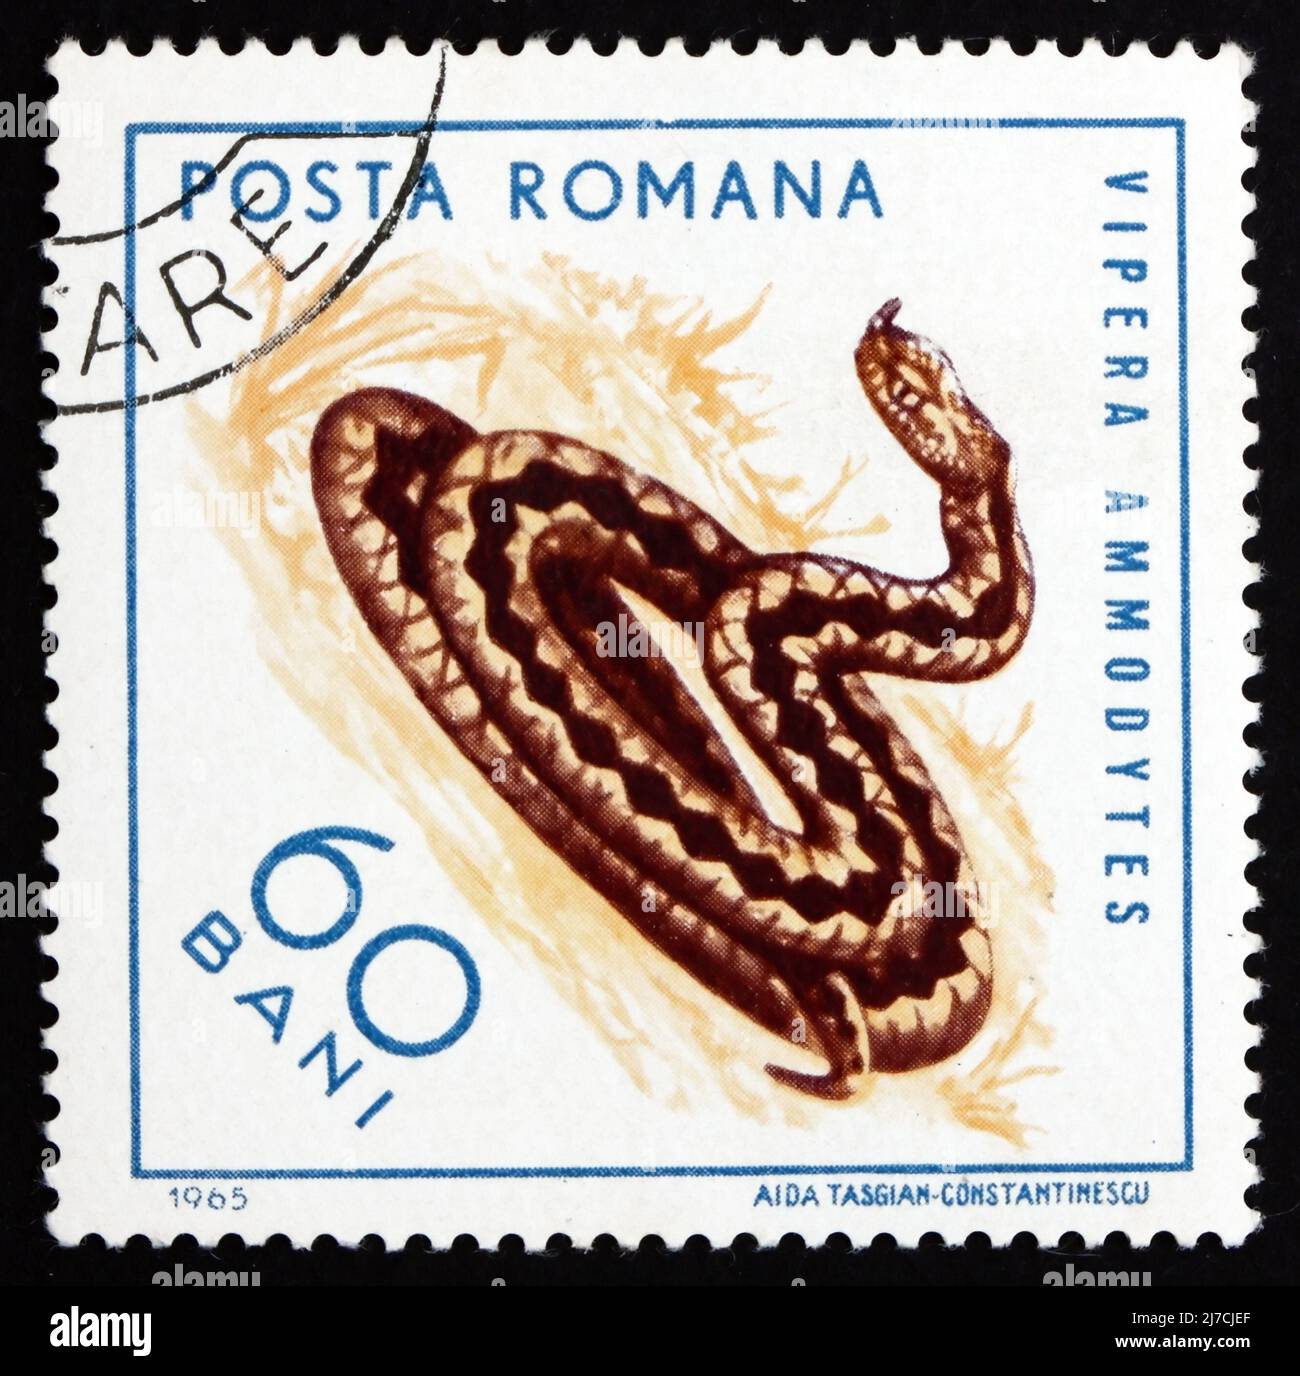 RUMÄNIEN - UM 1965: Eine in Rumänien gedruckte Briefmarke zeigt Sand Viper, Vipera ammodytes, Reptile, um 1965 Stockfoto